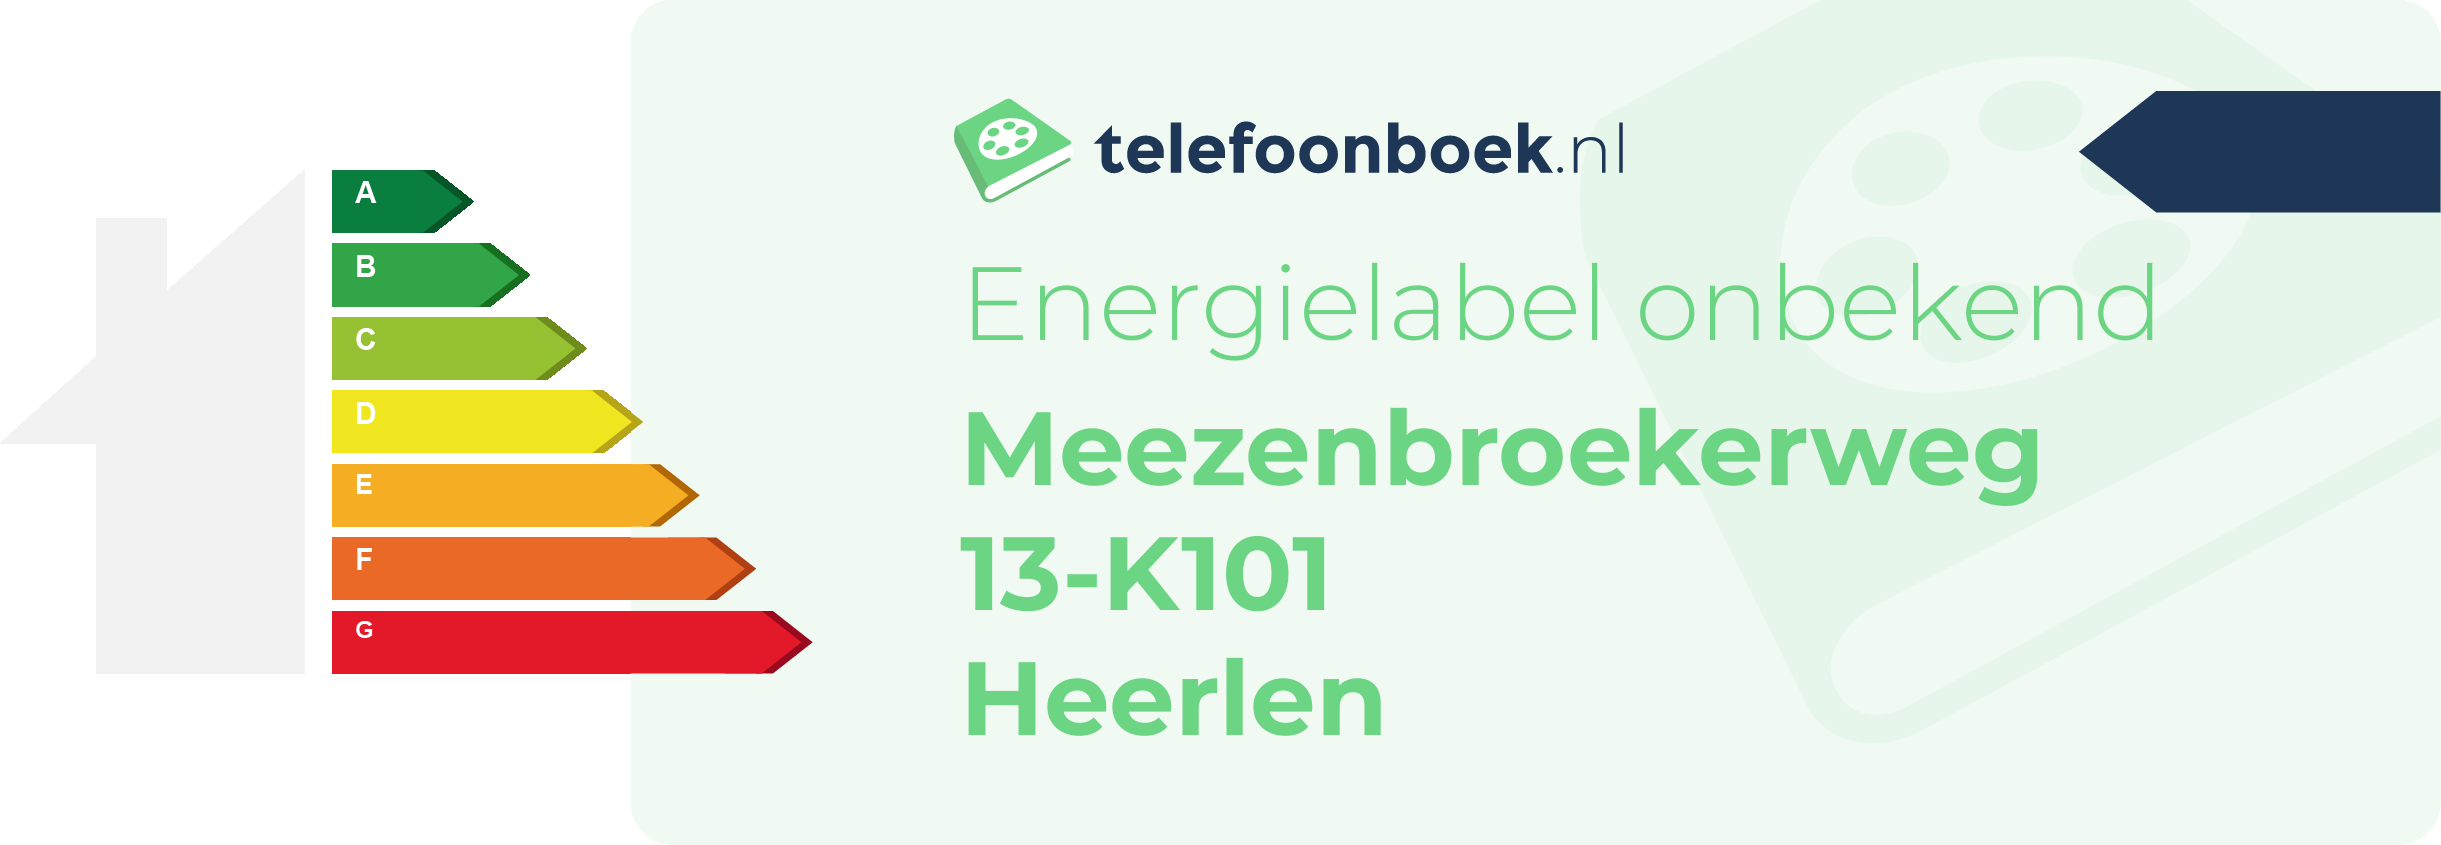 Energielabel Meezenbroekerweg 13-K101 Heerlen